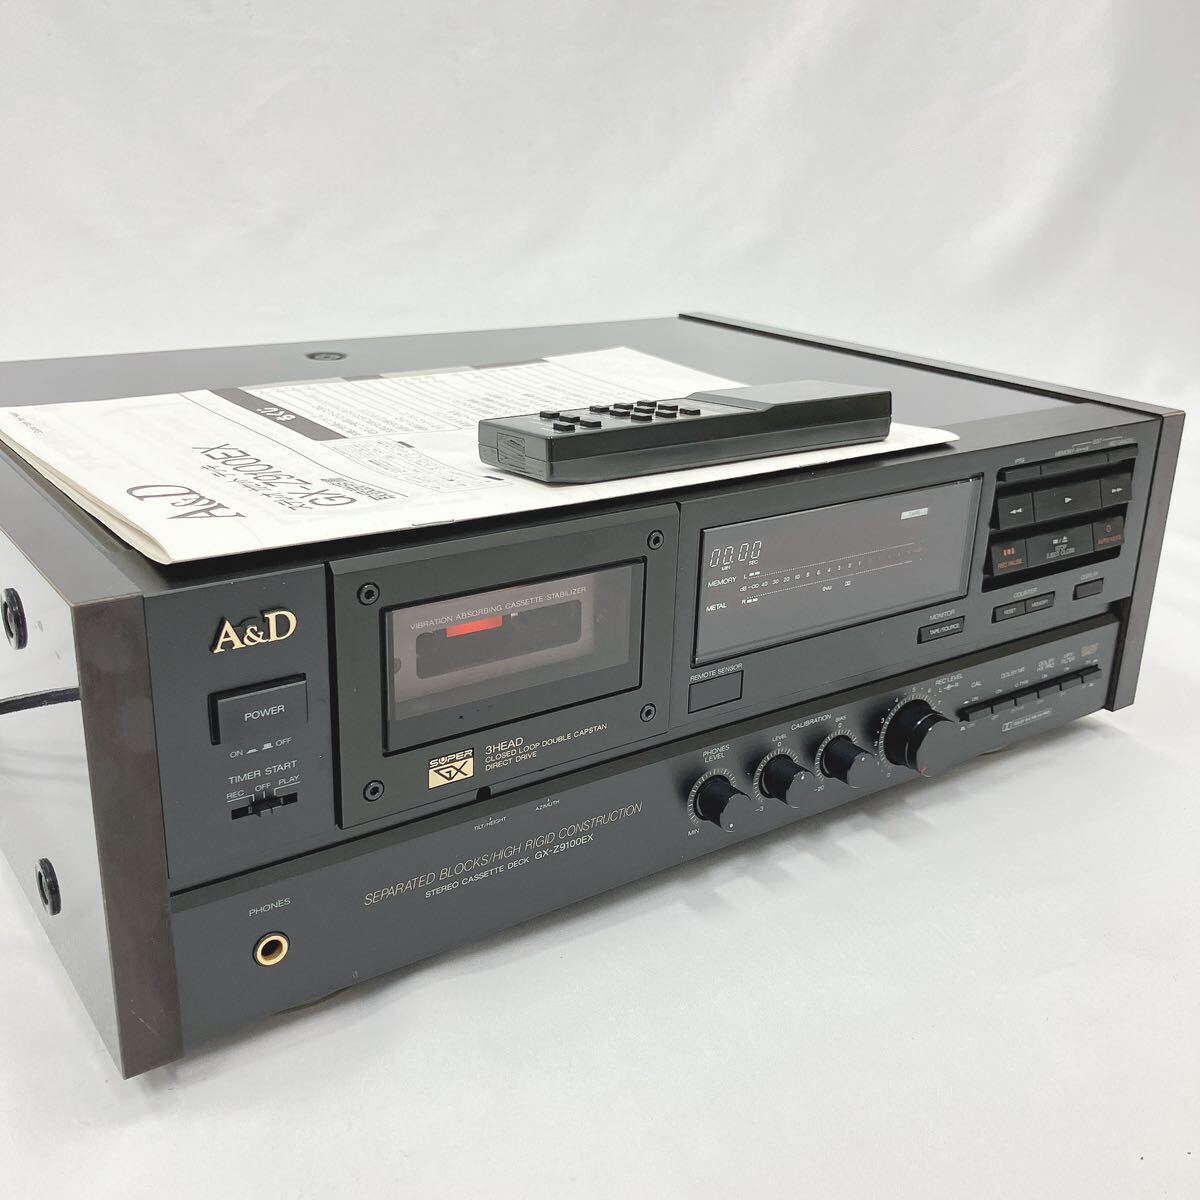 A&D GX-Z9100EX ステレオカセットデッキ カセットデッキ アカイ 赤井 オーディオ機器 リモコン 取説付き 追加写真有り 01-0315の画像1